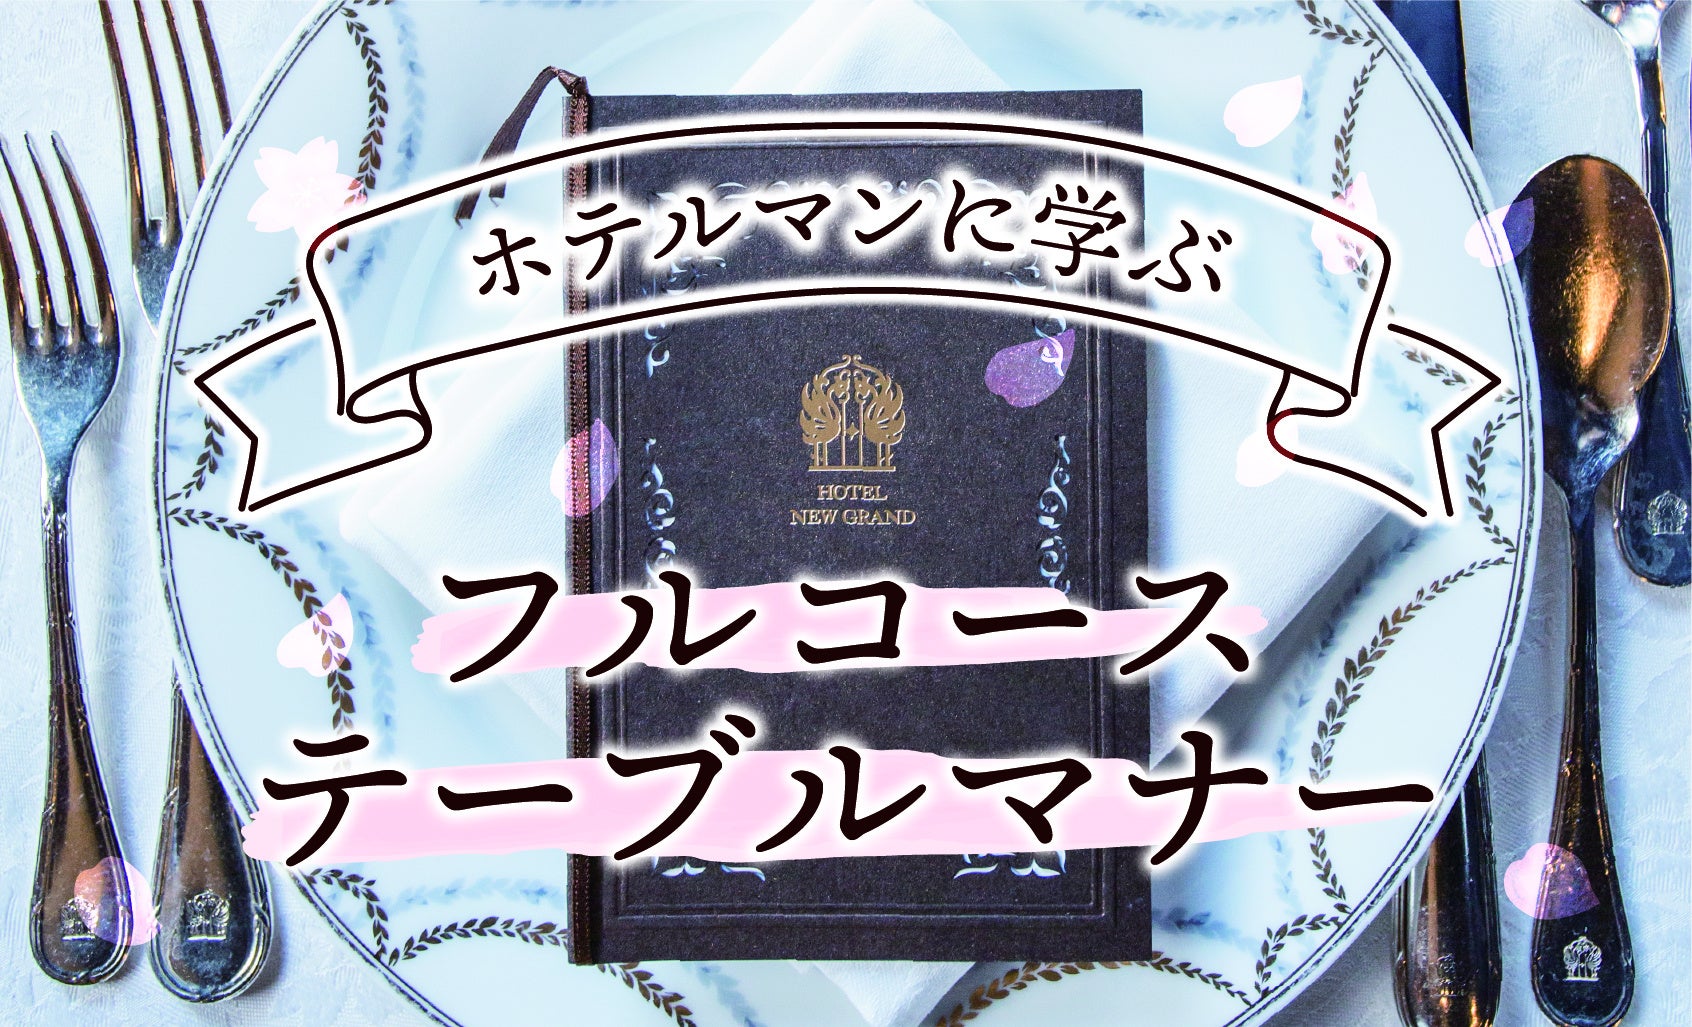 「京都利休の生わらび餅」が贈る至高の味。高級生わらび餅が「イオンモール相模原」に出店!